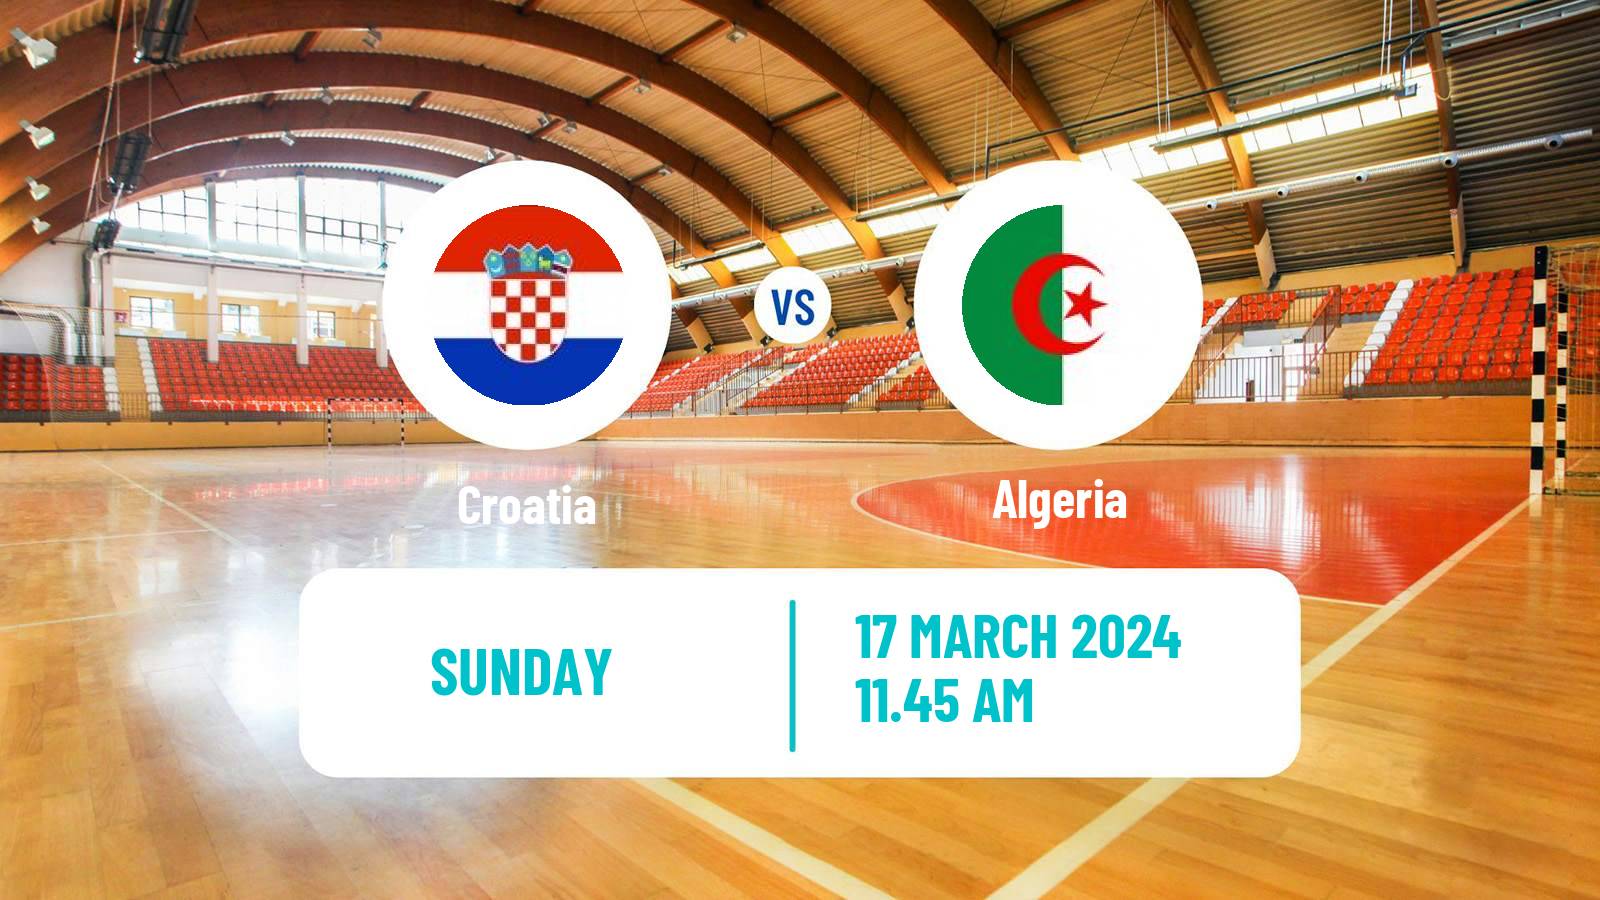 Handball Olympic Games - Handball Croatia - Algeria